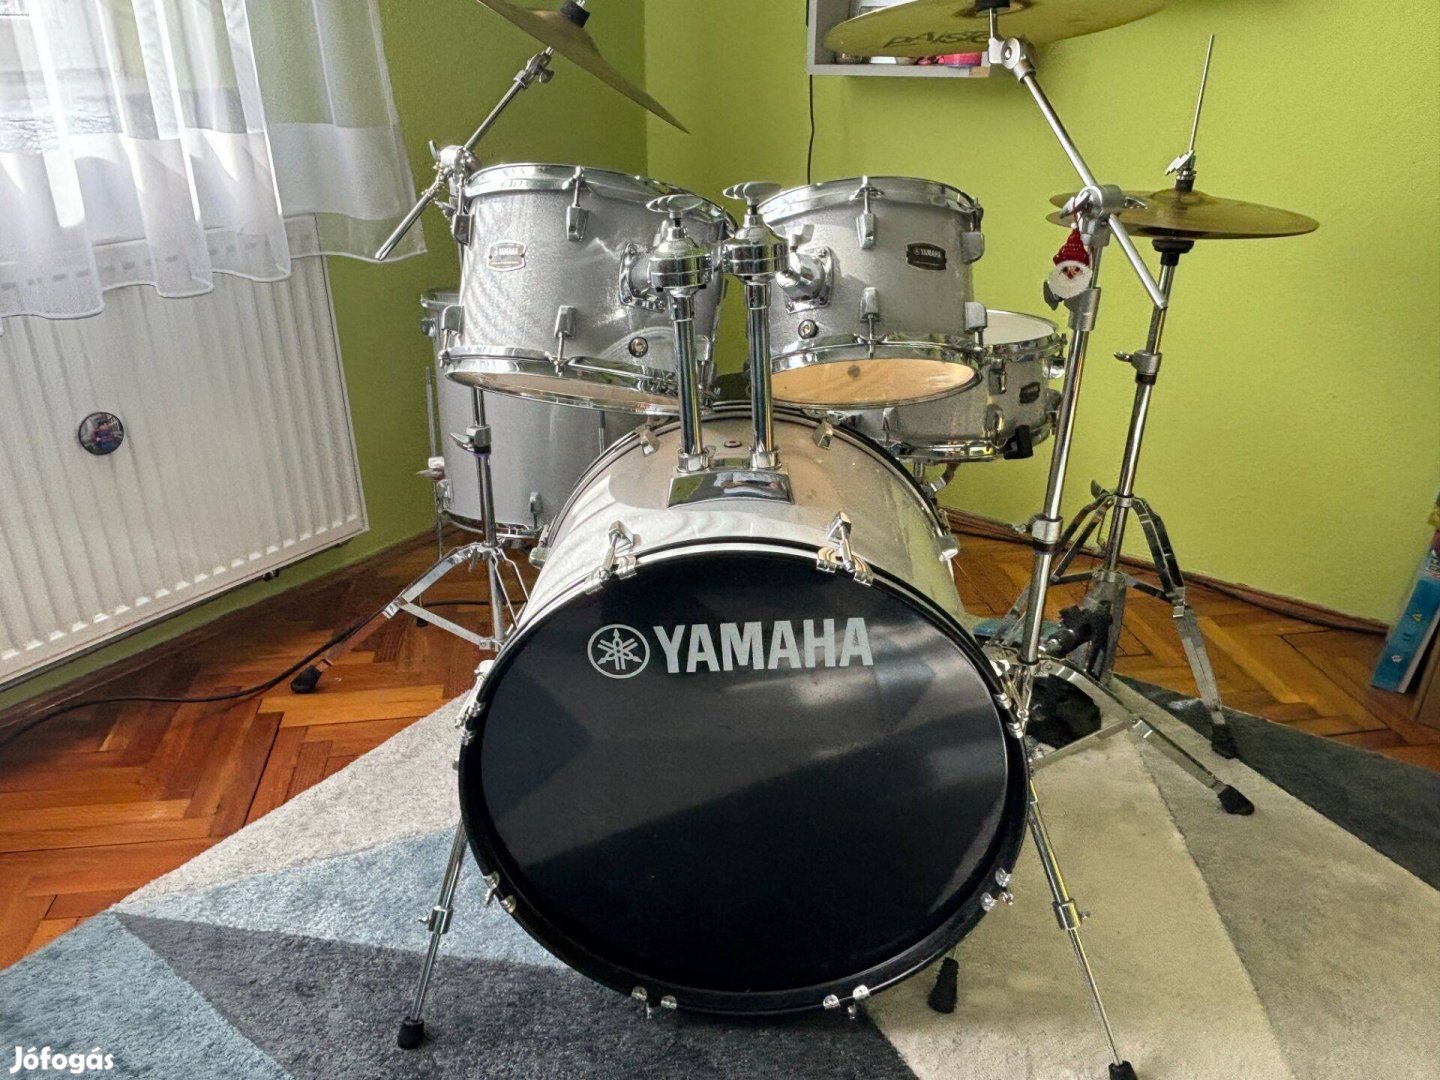 Yamaha dobfelszerelés